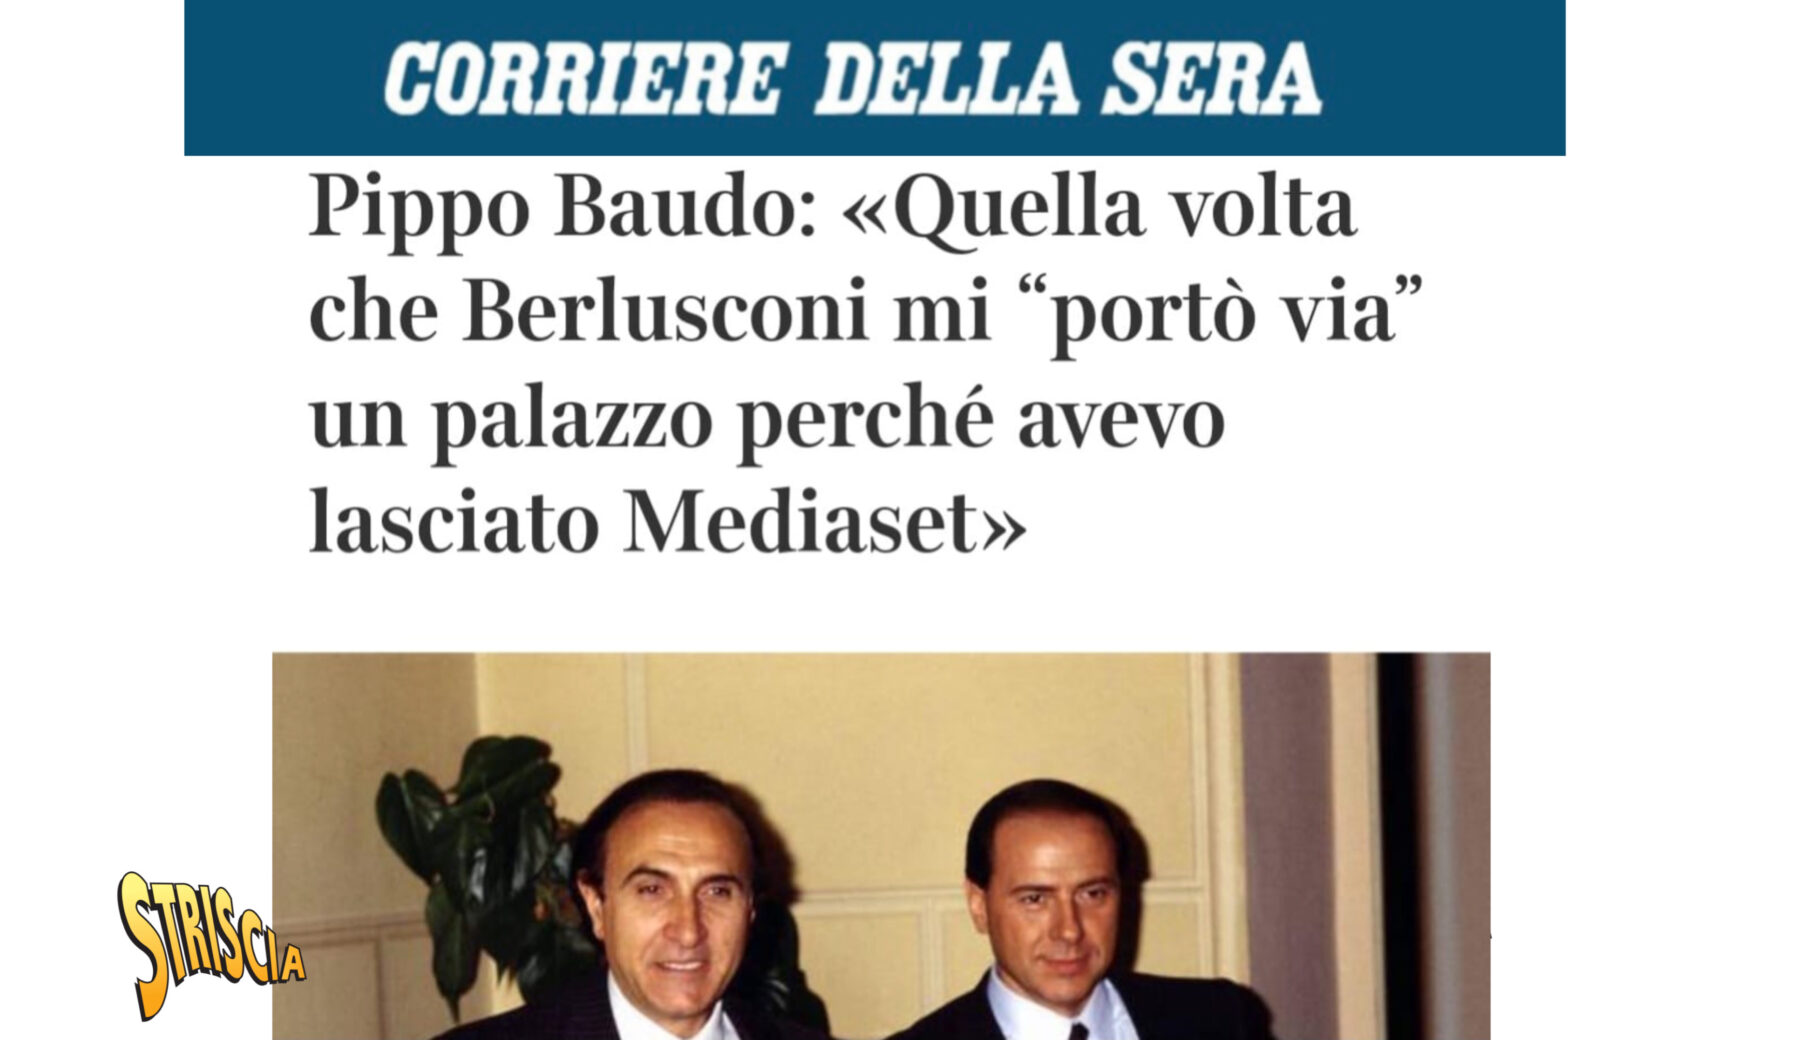 Pippo Baudo e la “fake news” del palazzo ceduto a Berlusconi: ecco come andò veramente